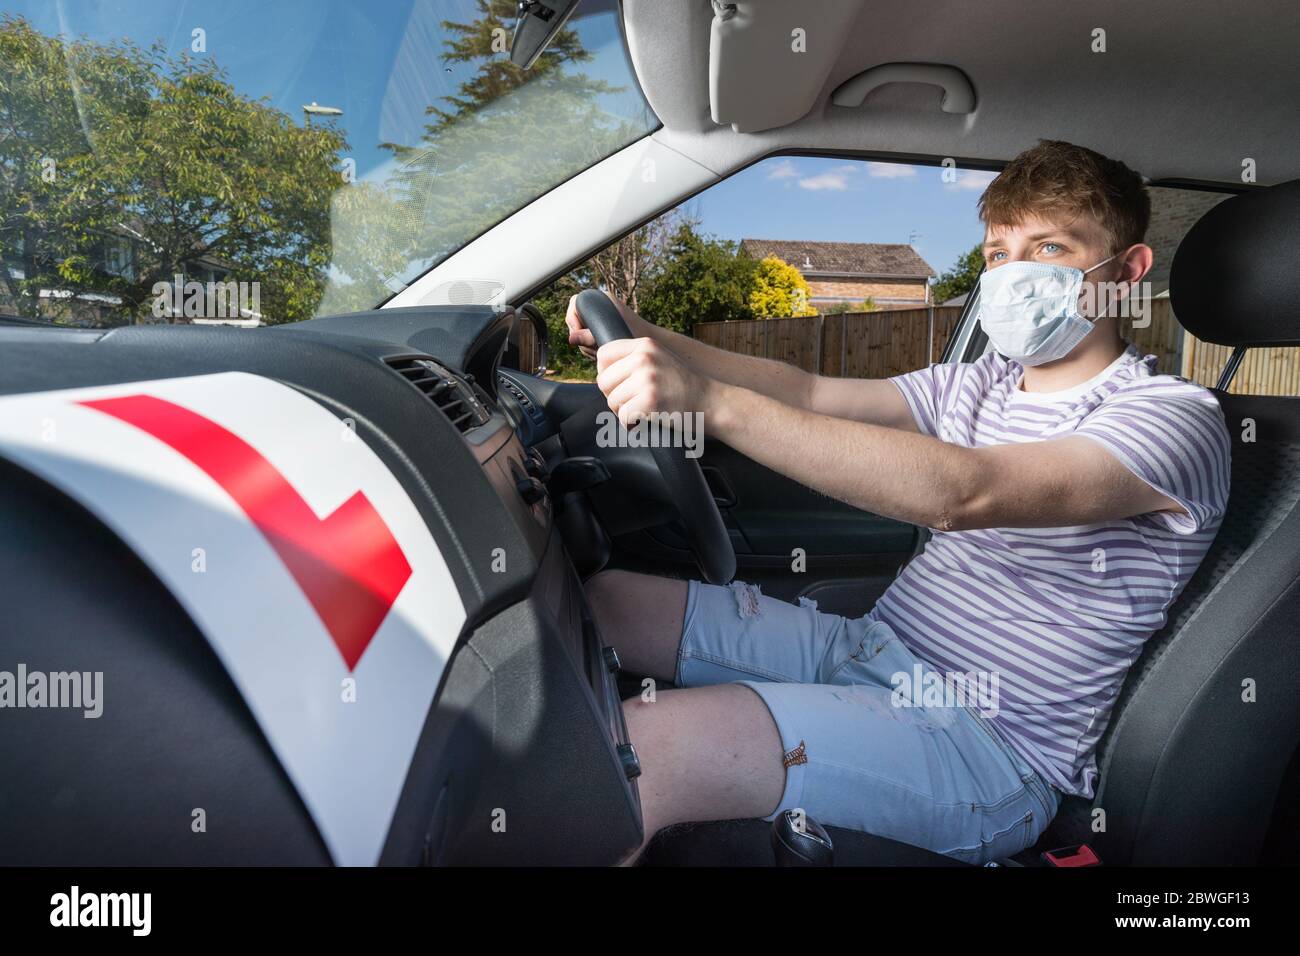 L'adolescent conducteur a portant un masque facial en raison de la pandémie du coronavirus attendant de commencer sa leçon de conduite. Banque D'Images